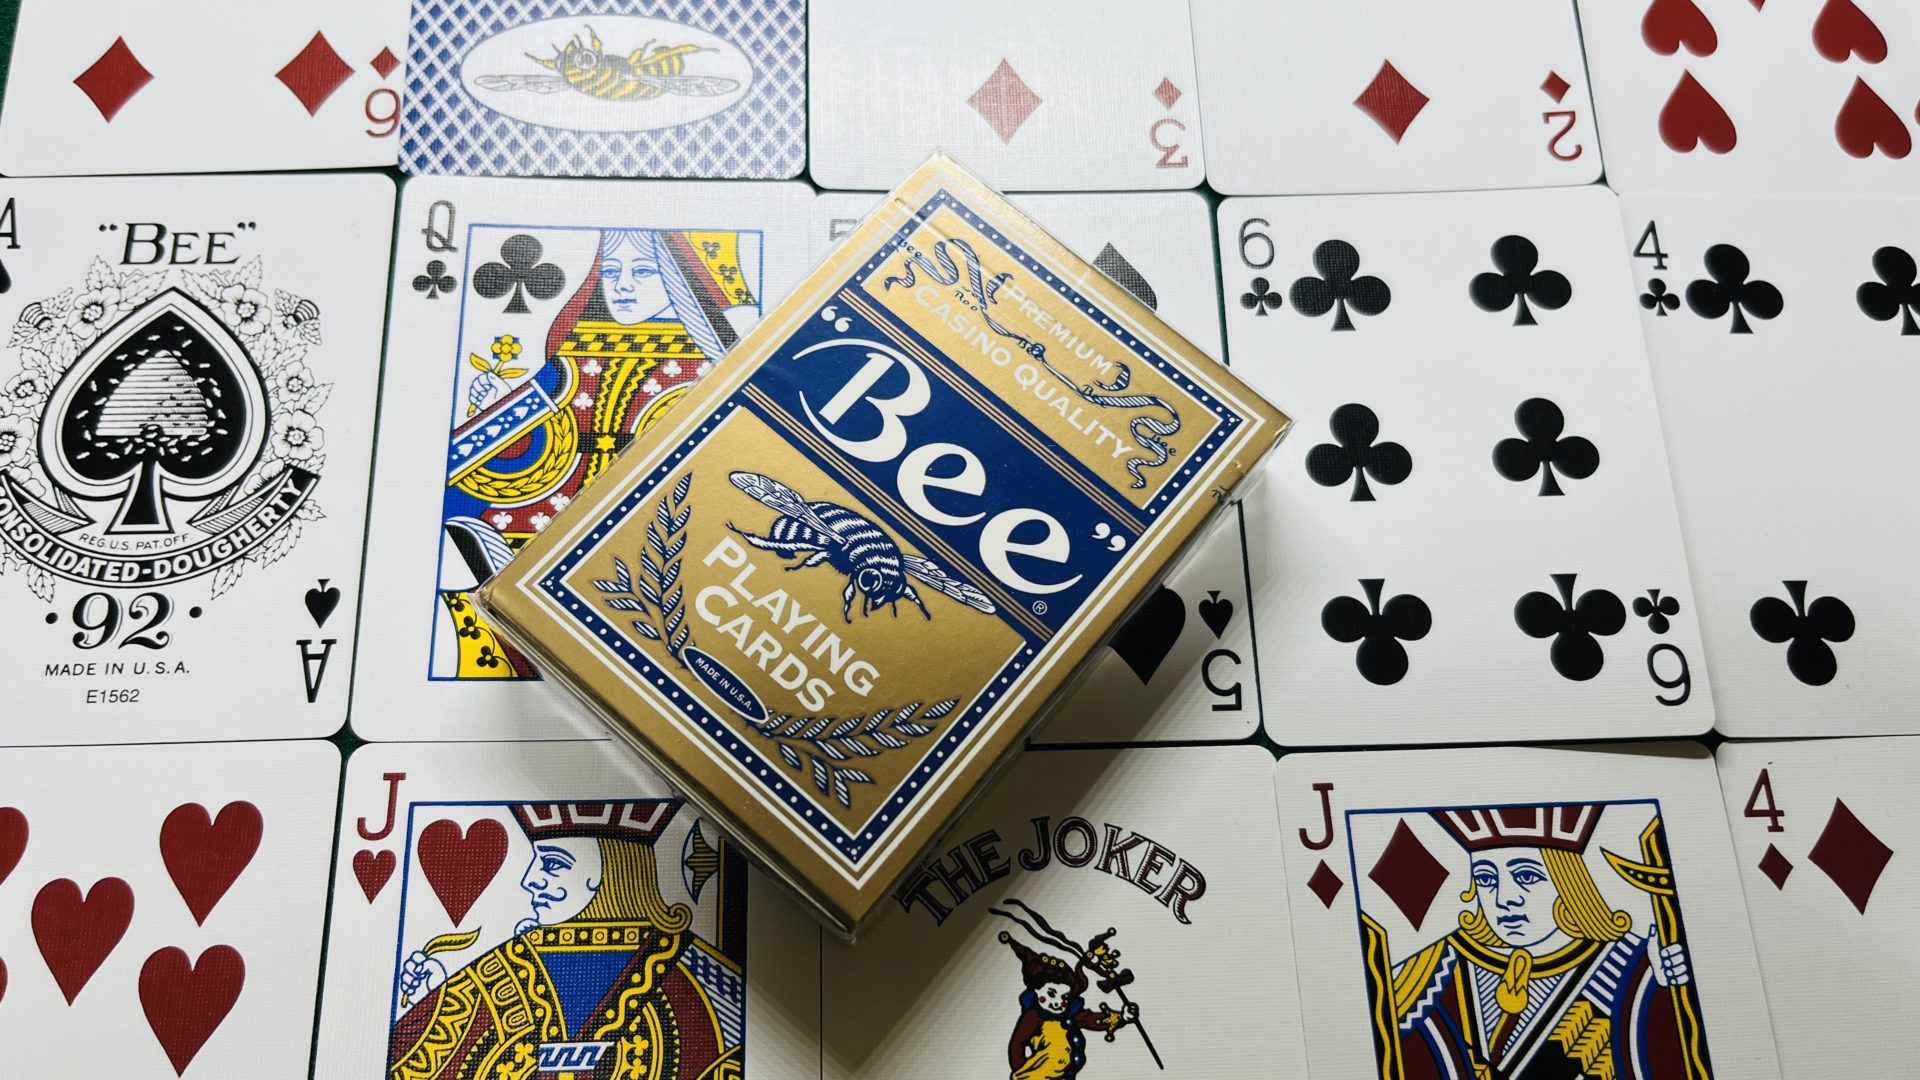 Bee Premium Casino Quality ー Playingcard トランプ レビュー Casino屋